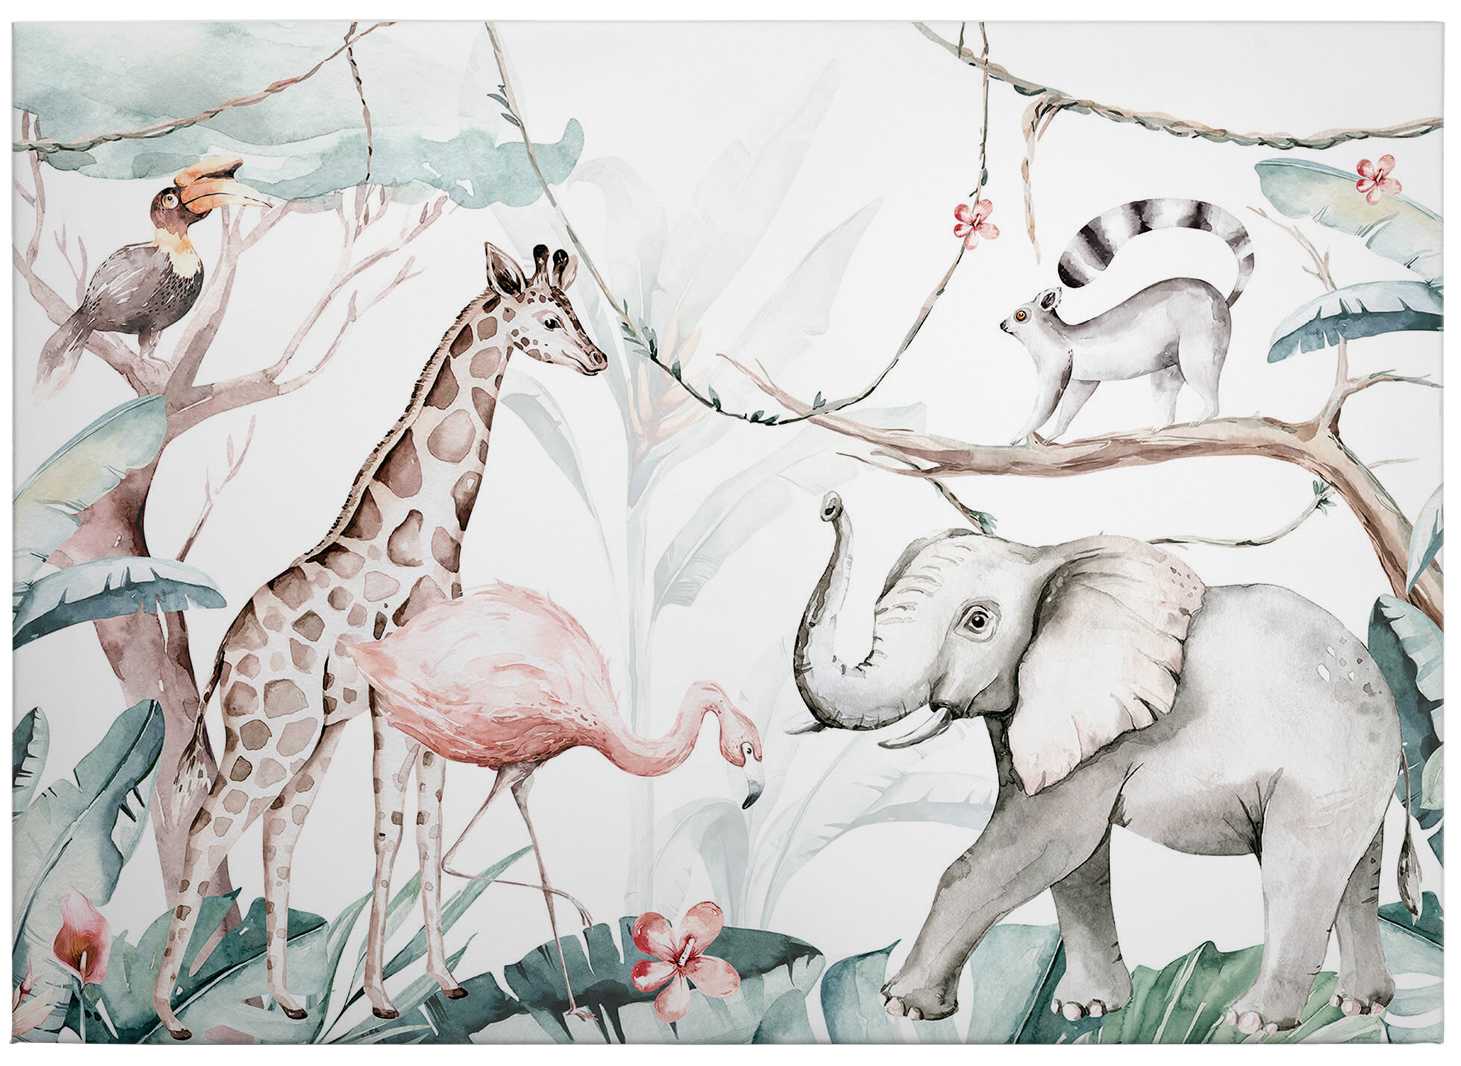             Cuadro infantil Animales de la jungla Acuarela by Kvilis - 0,70 m x 0,50 m
        